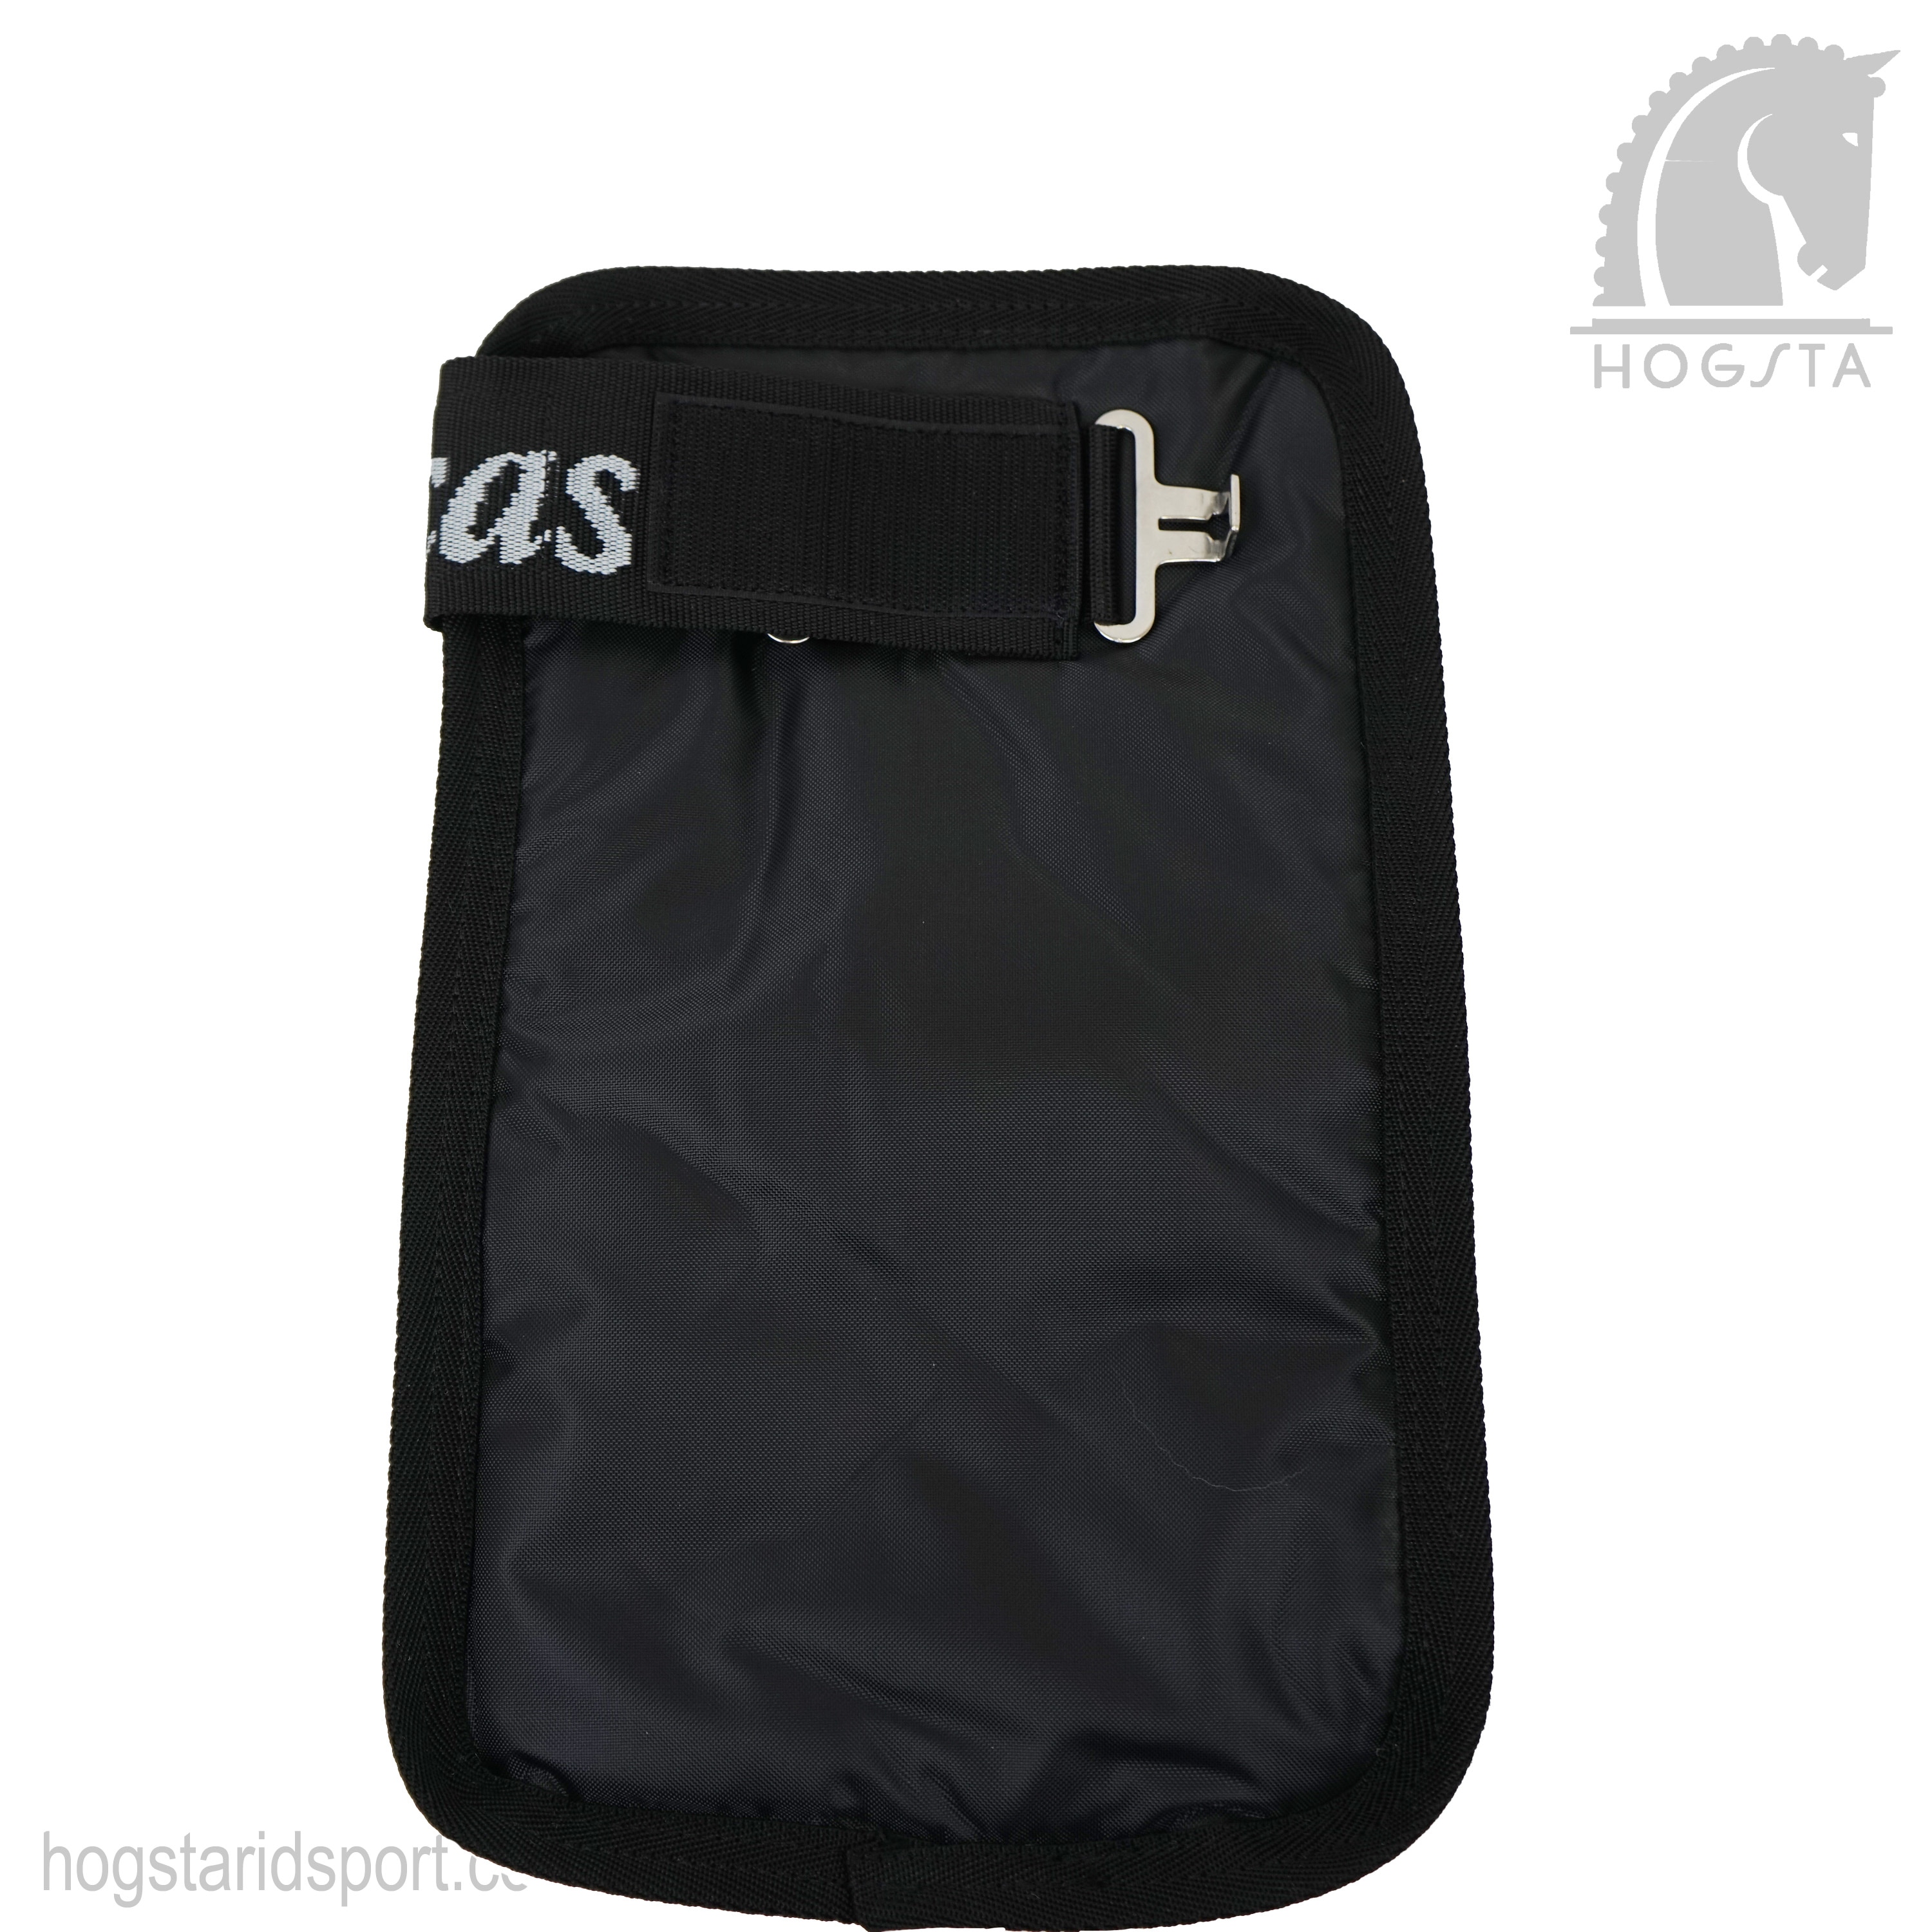 Bag Accessory Bag Accessory Bag Extender Waist Bag Extender Bag